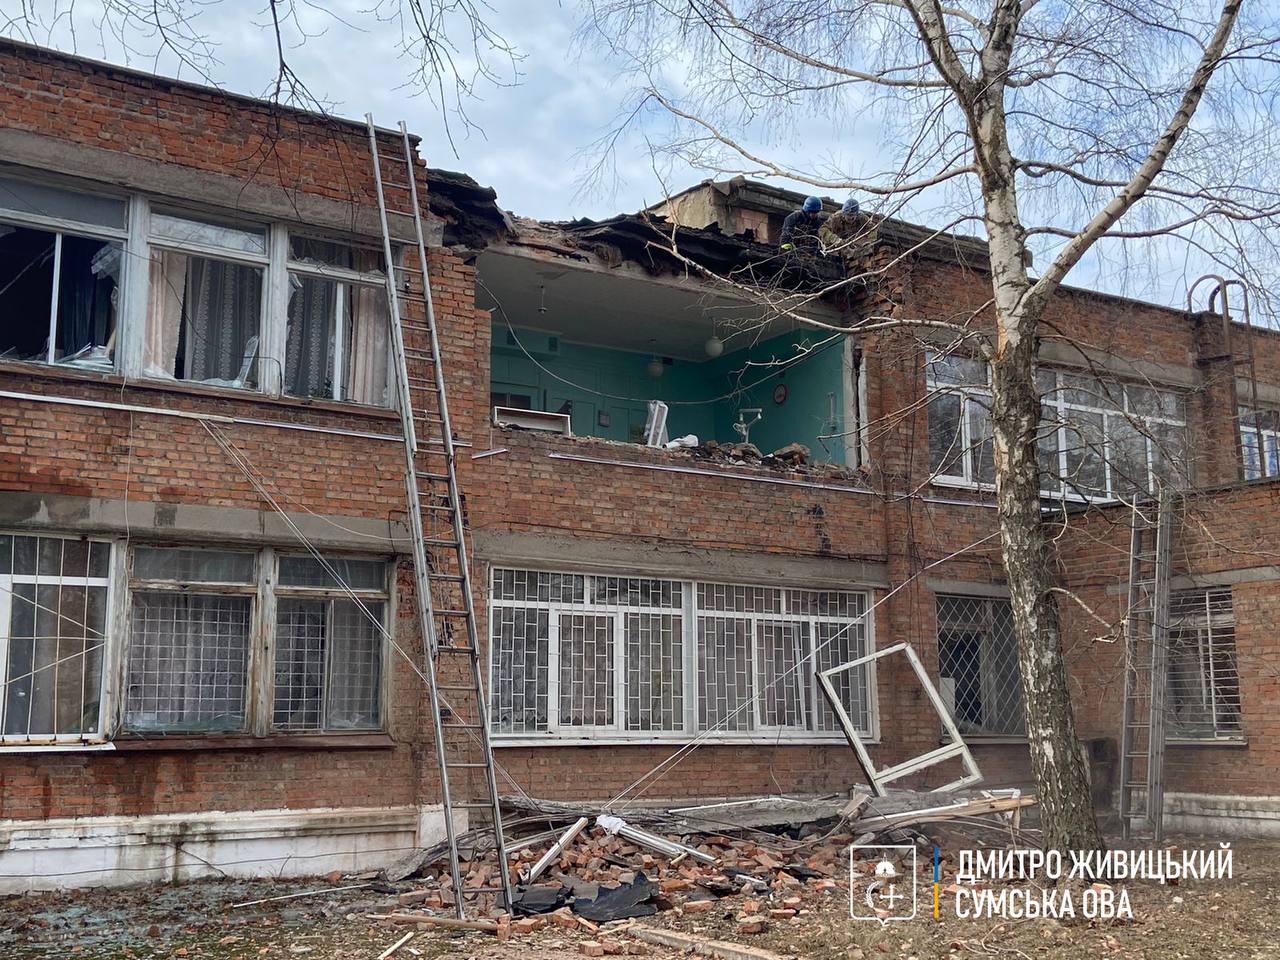 死者1名。 マドリッド、紙爆弾で負傷したキエフ大使館の従業員